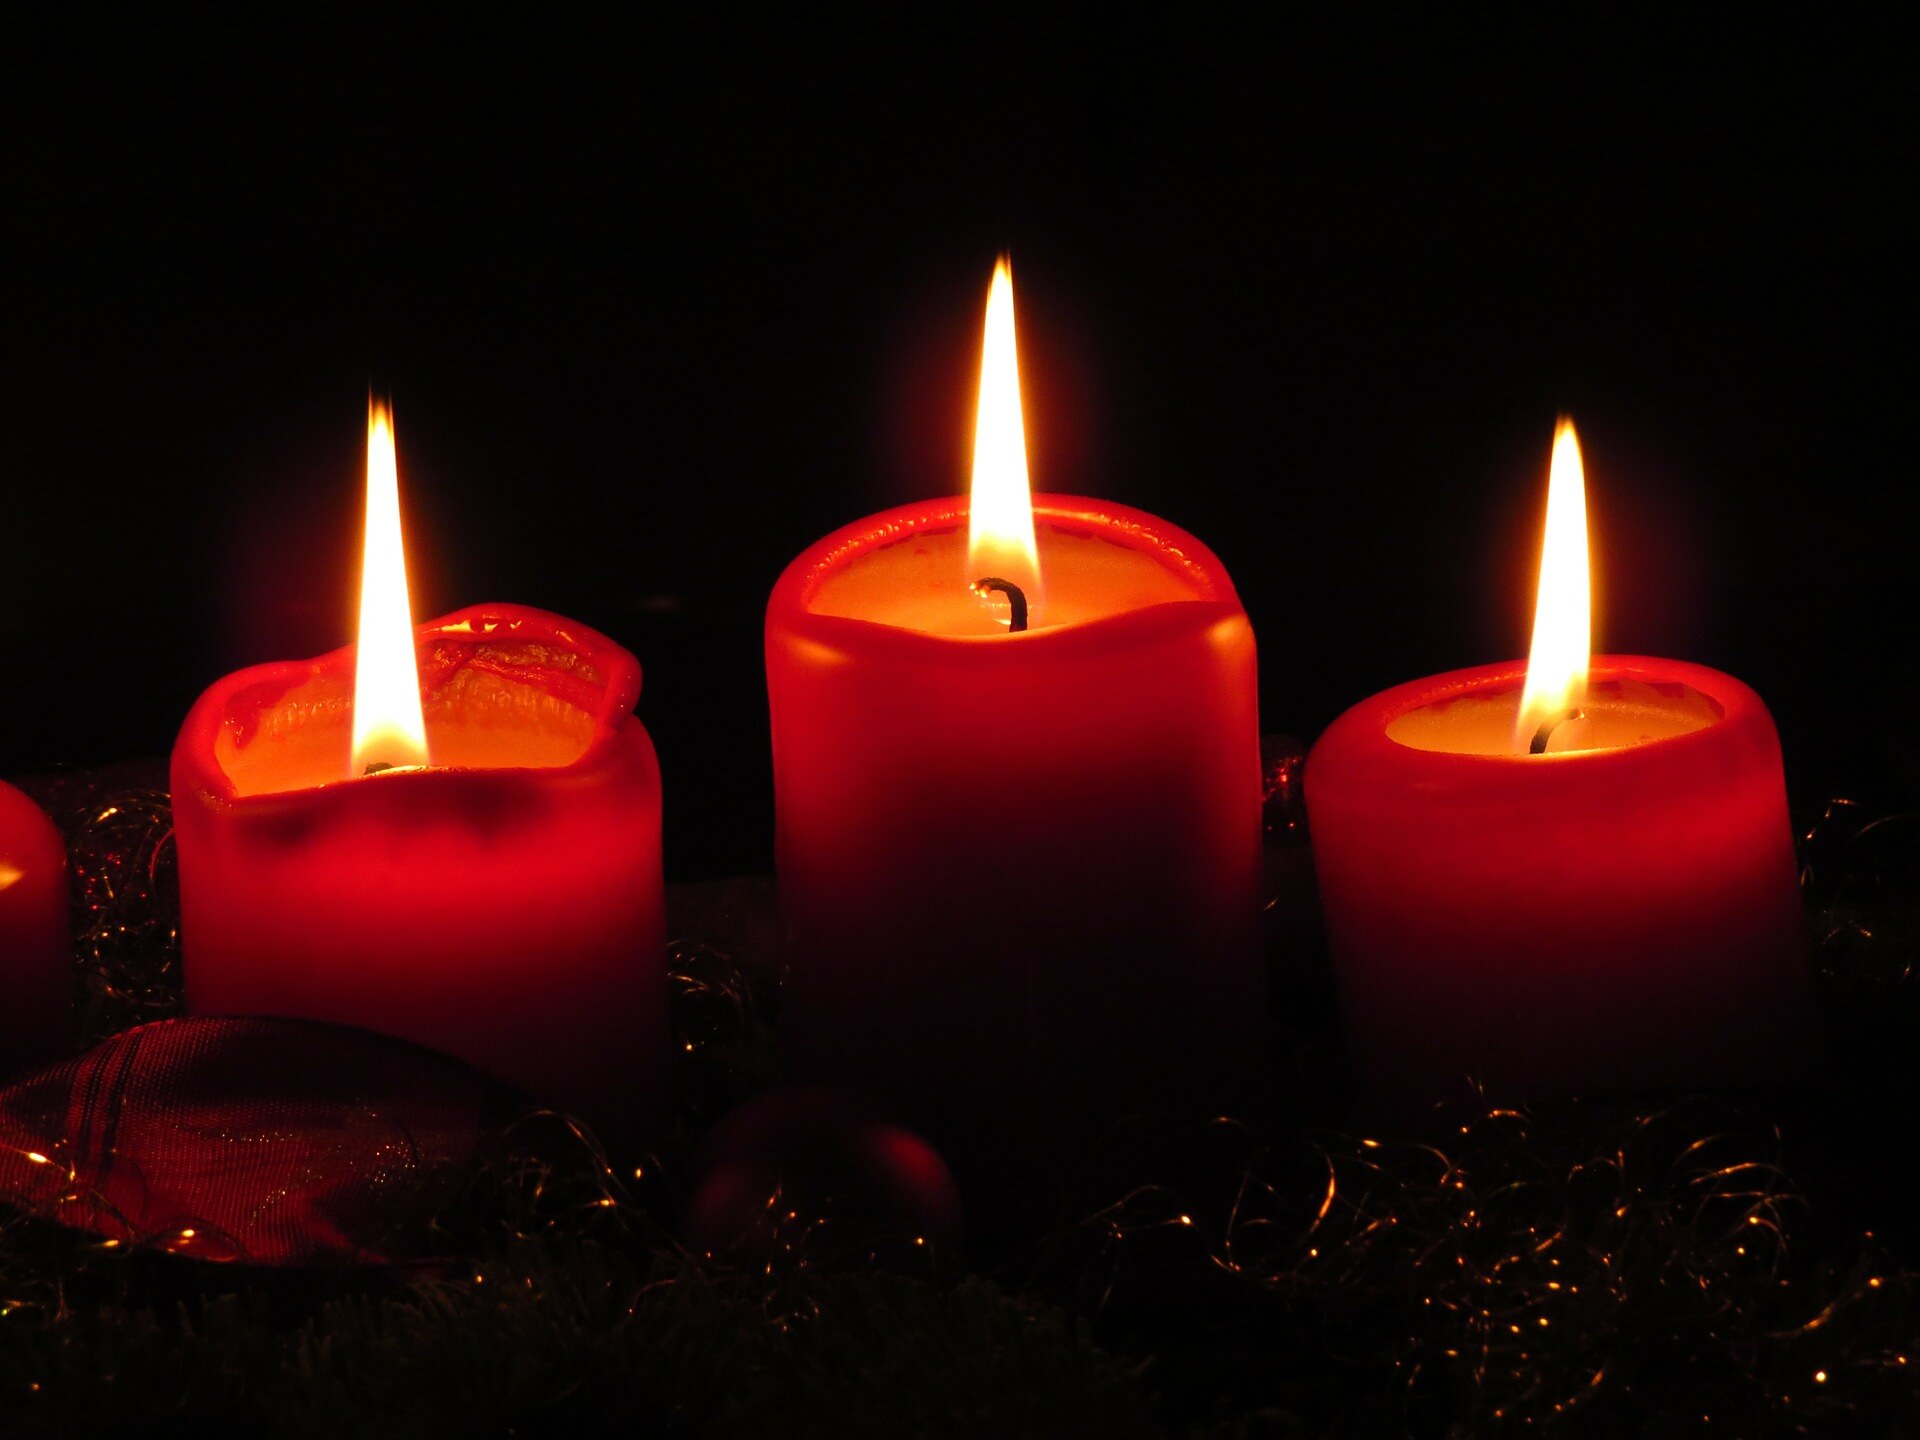 Eine Kerze kann 280 Mikrogramm Stickoxid produzieren. Adventskränze sind trotzdem nicht giftig. Bild: pixabay